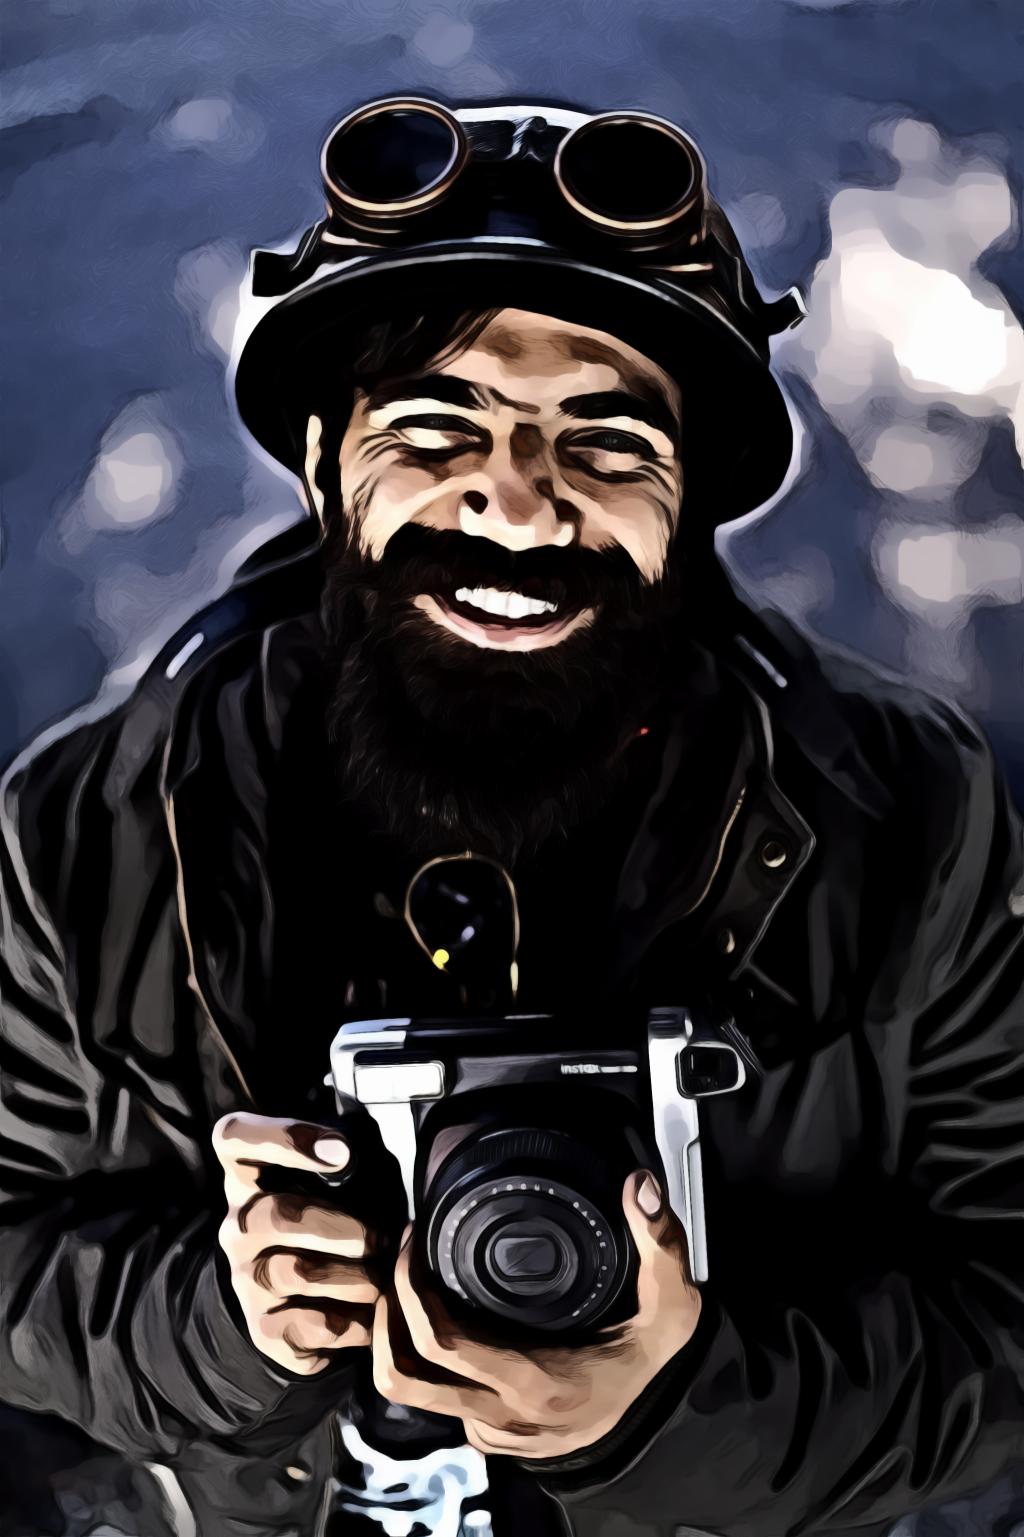 Man smiling holding camera